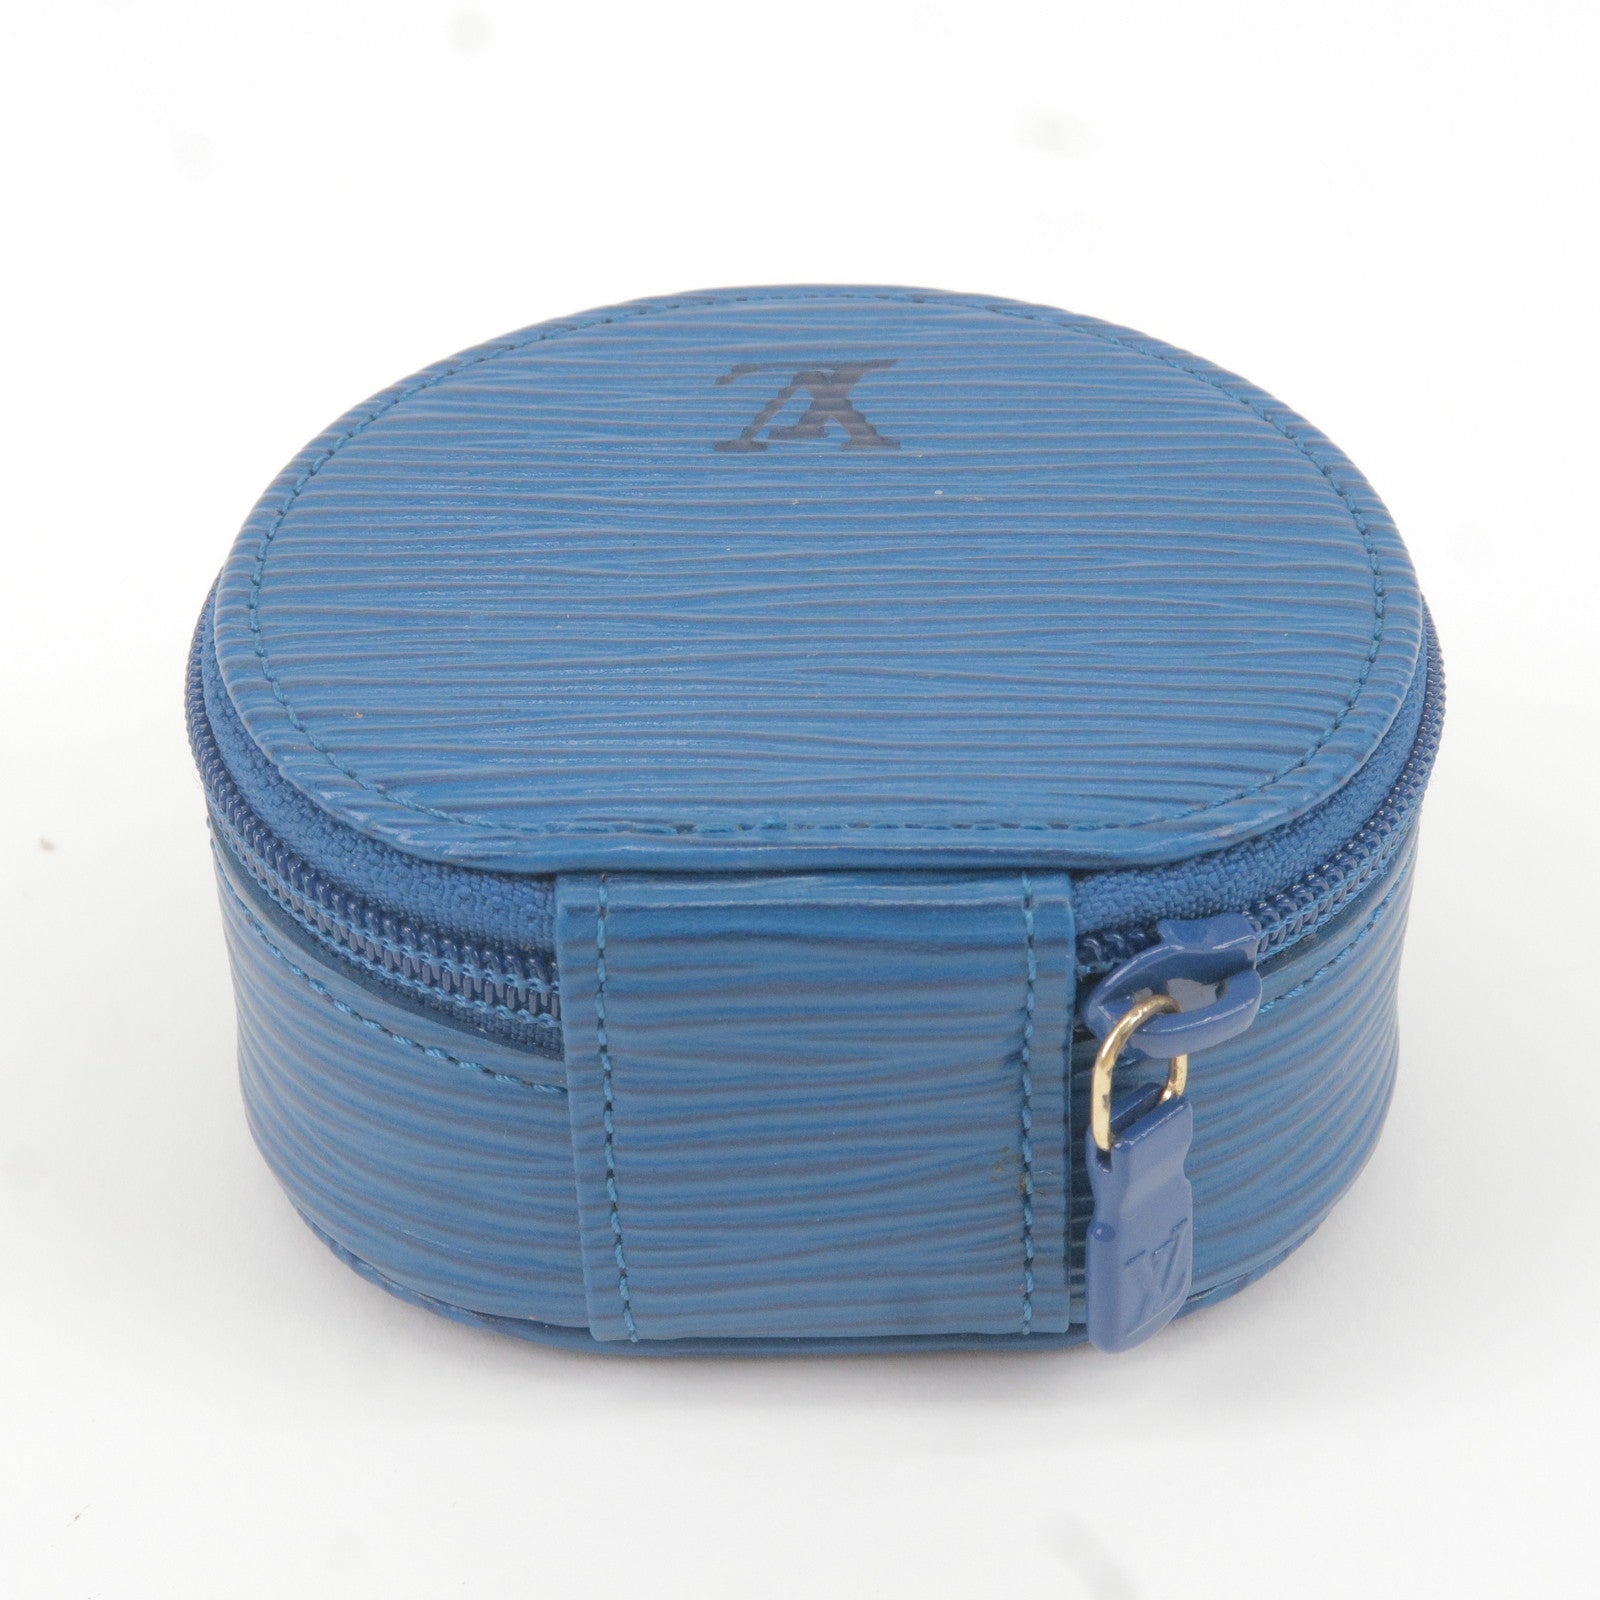 Louis Vuitton, Bags, Louis Vuitton Cruiser Bag 45 Epi Blue